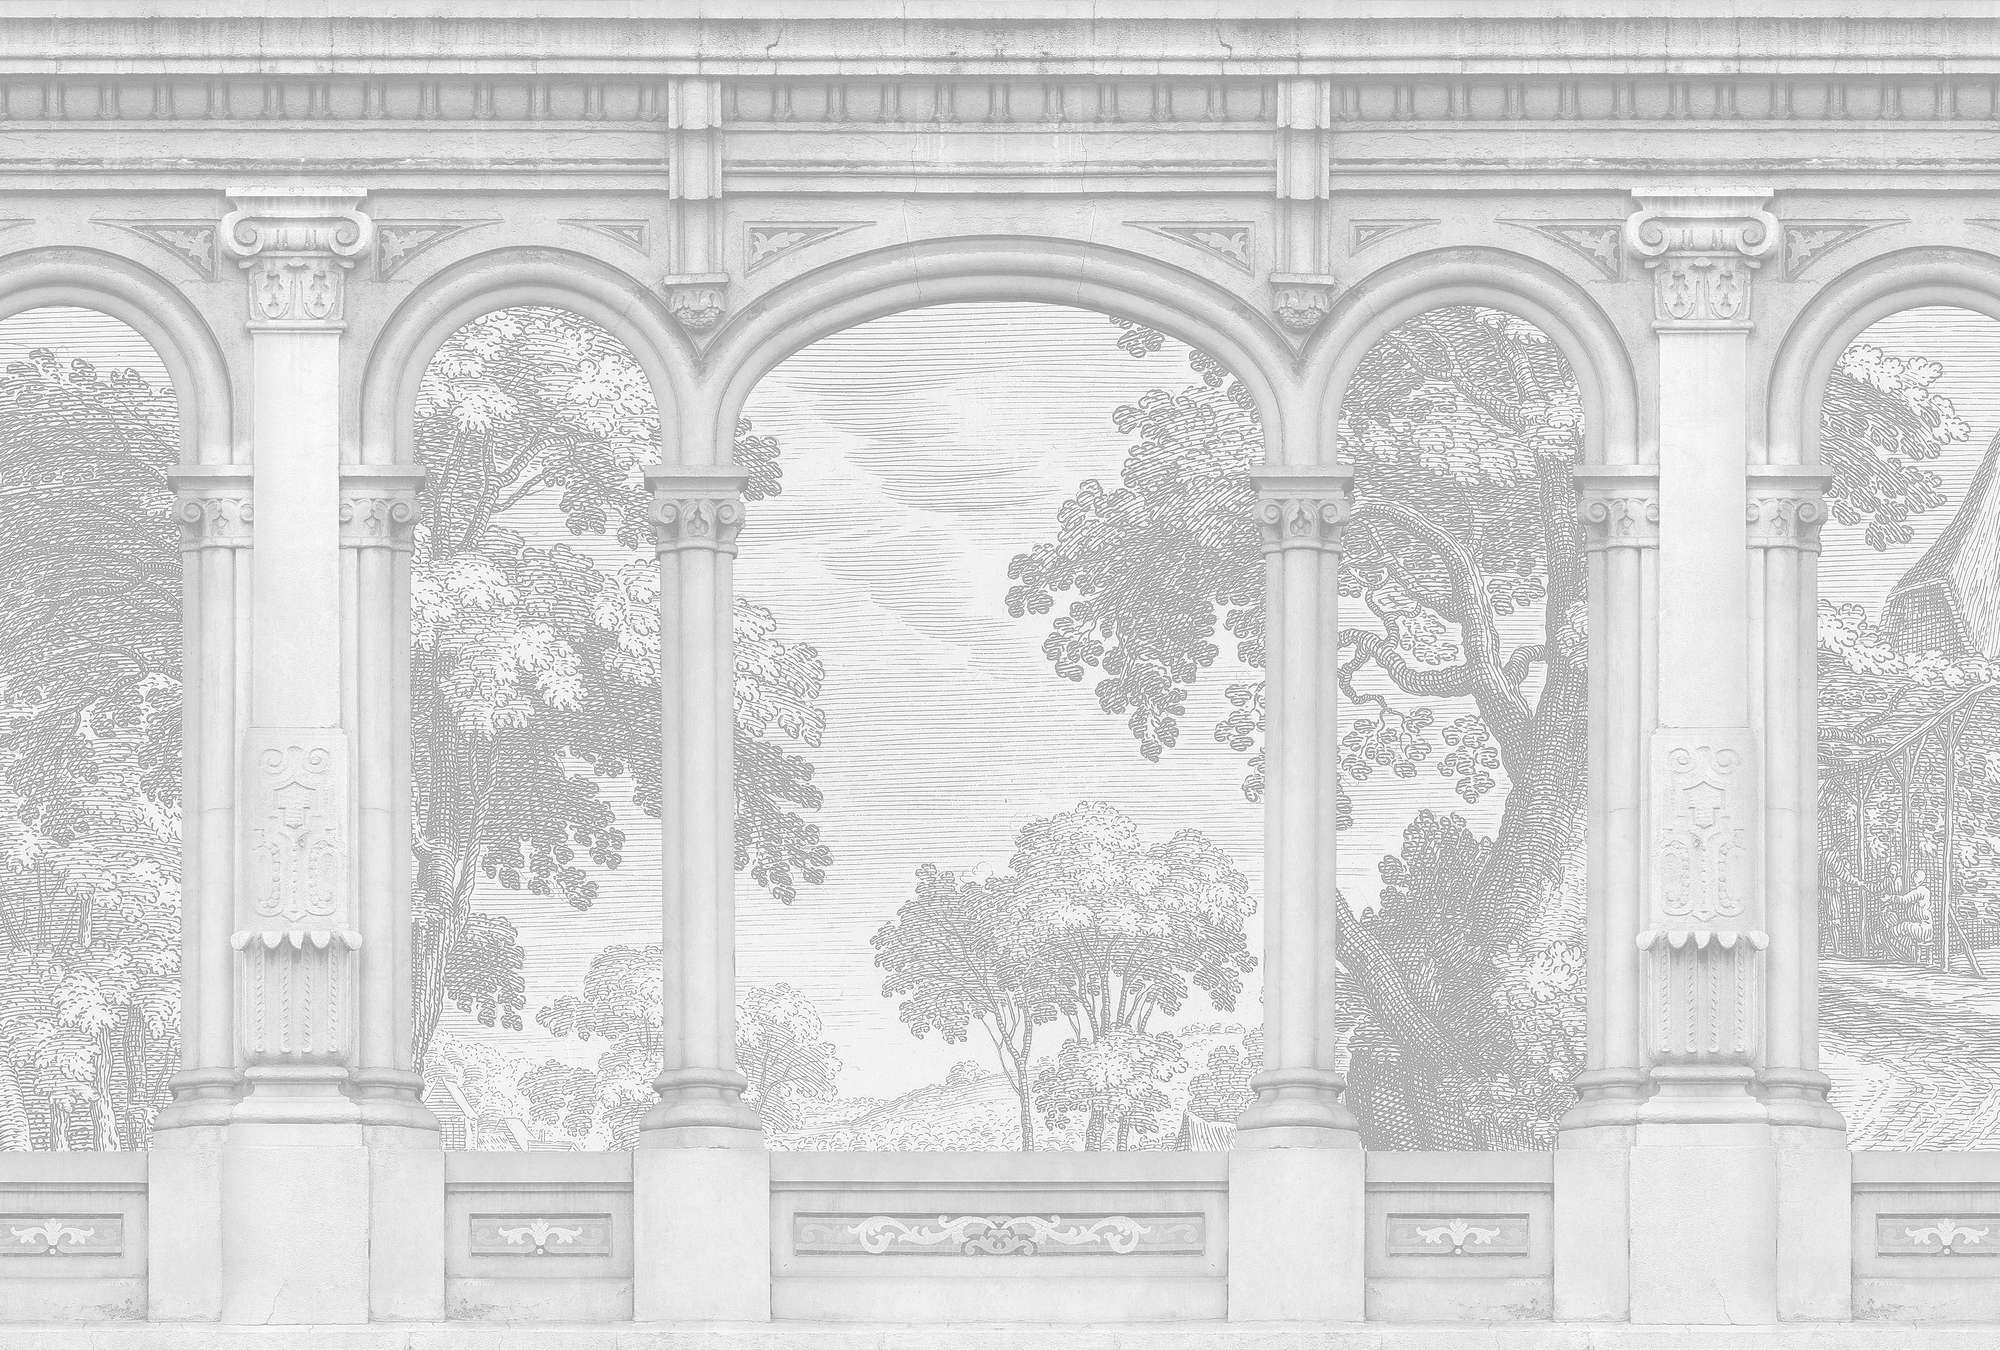             Roma 1 – Graue Fototapete Historic Design mit Rundbogen Fenster
        